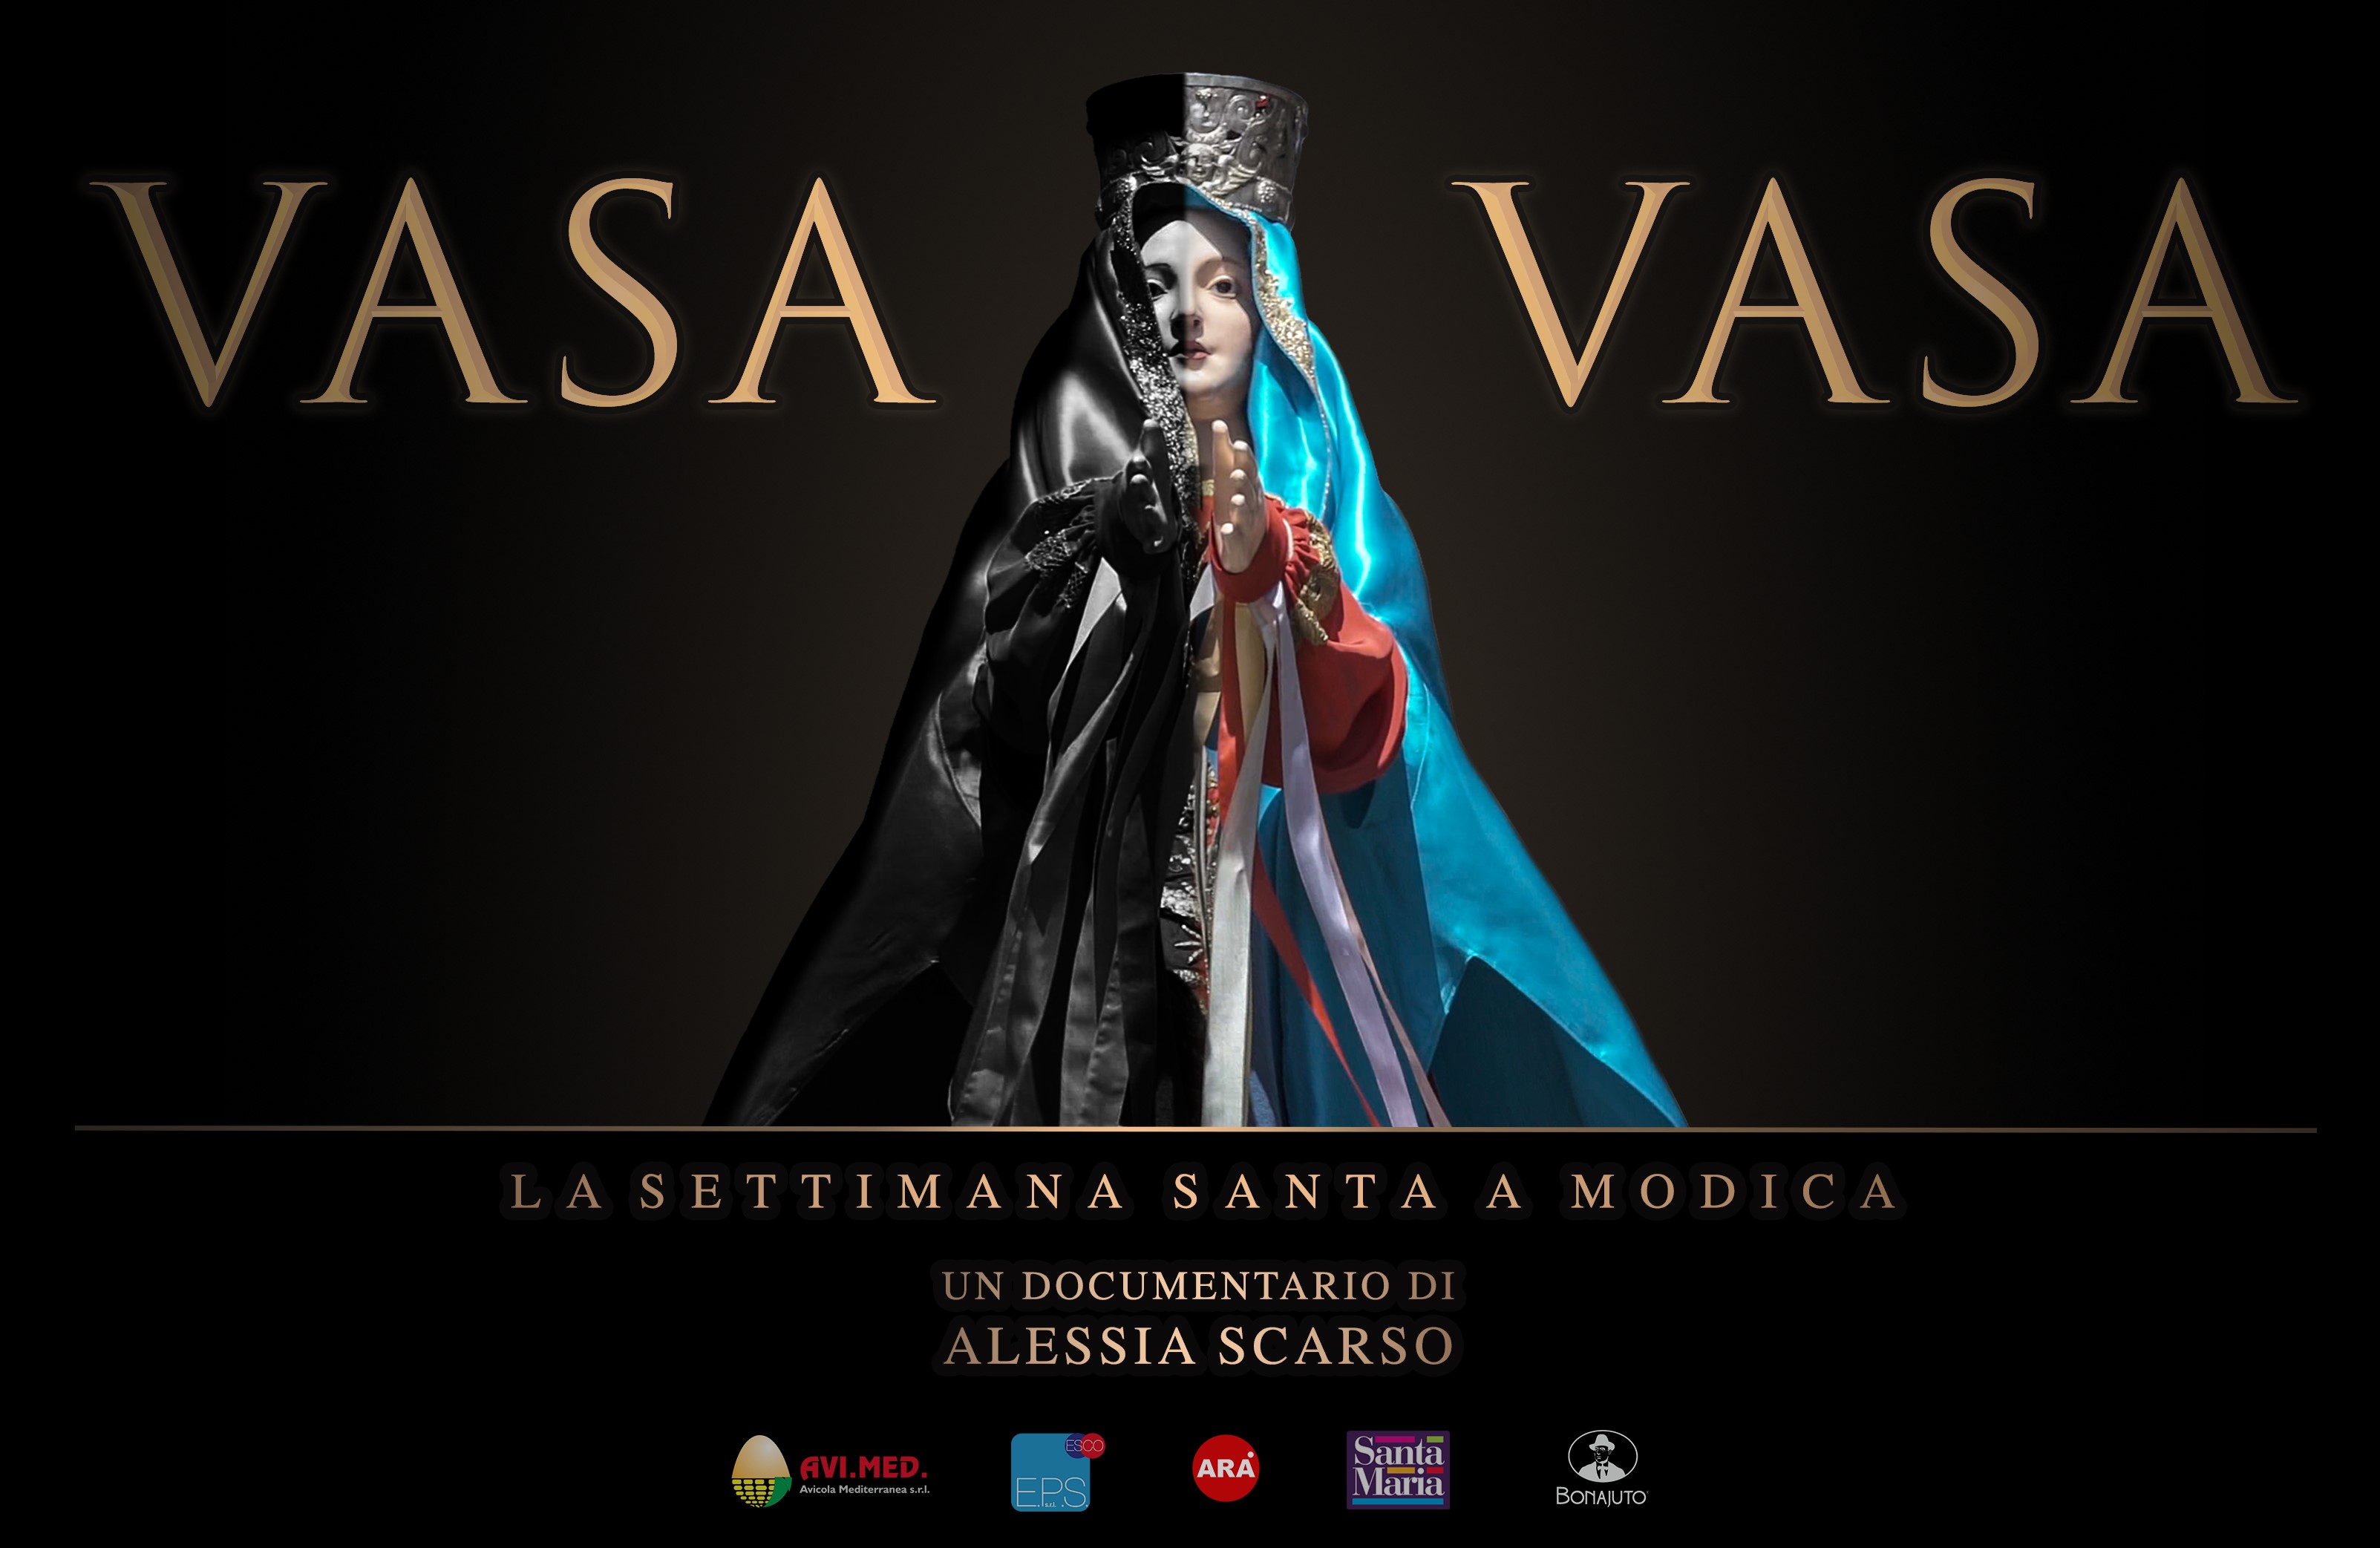 Modica, il 19 marzo "anteprima" del documentario "Vasa Vasa" di Alessia Scarso